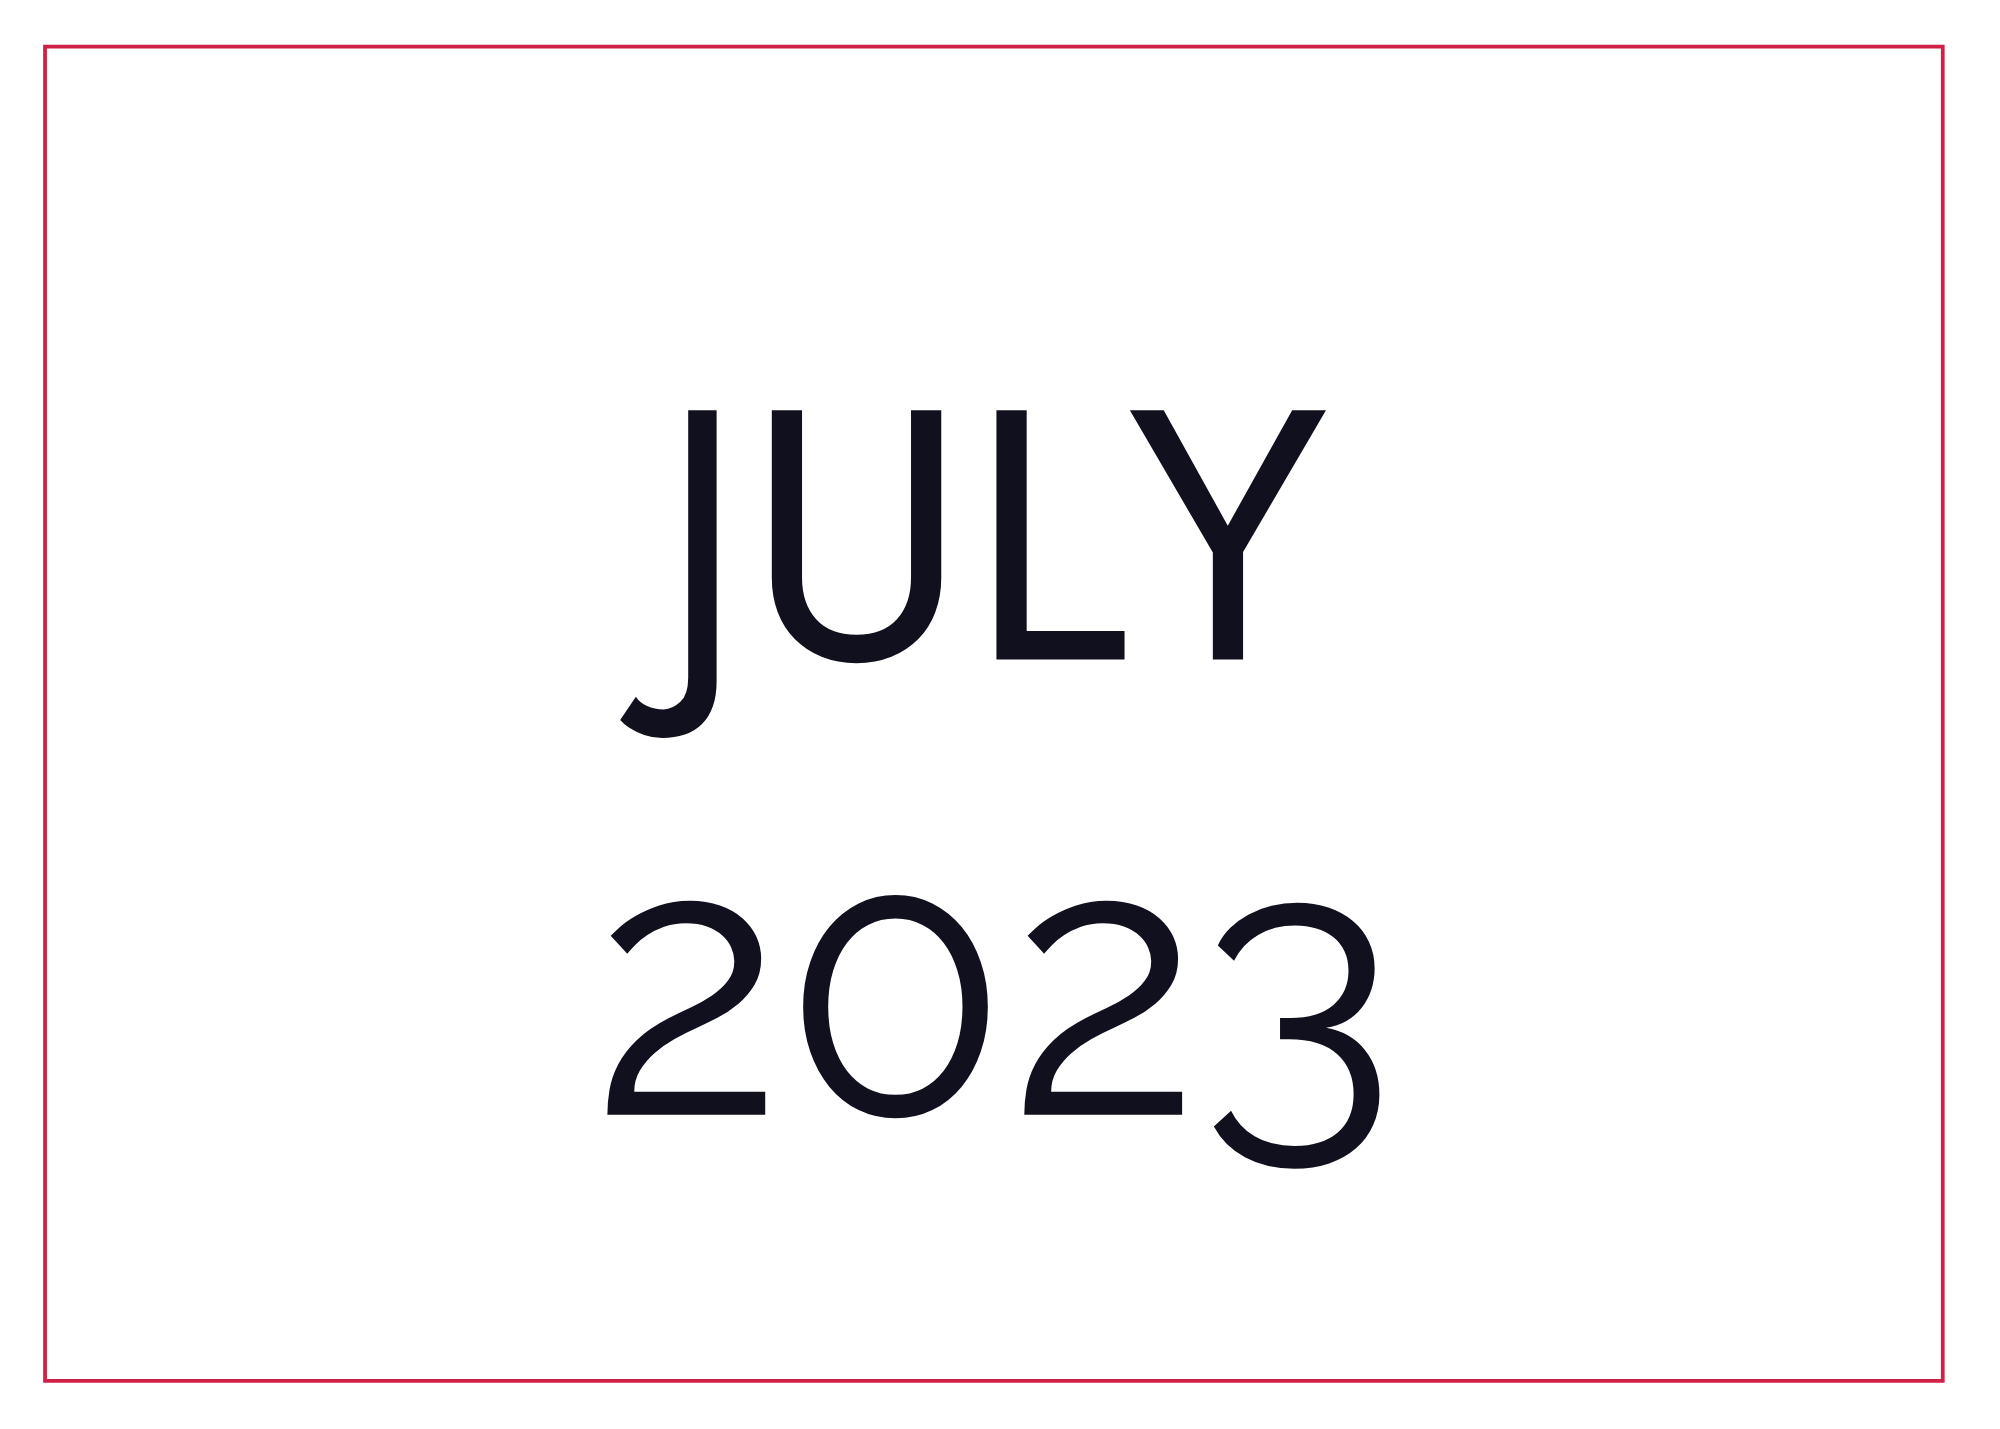 JULY 2023 